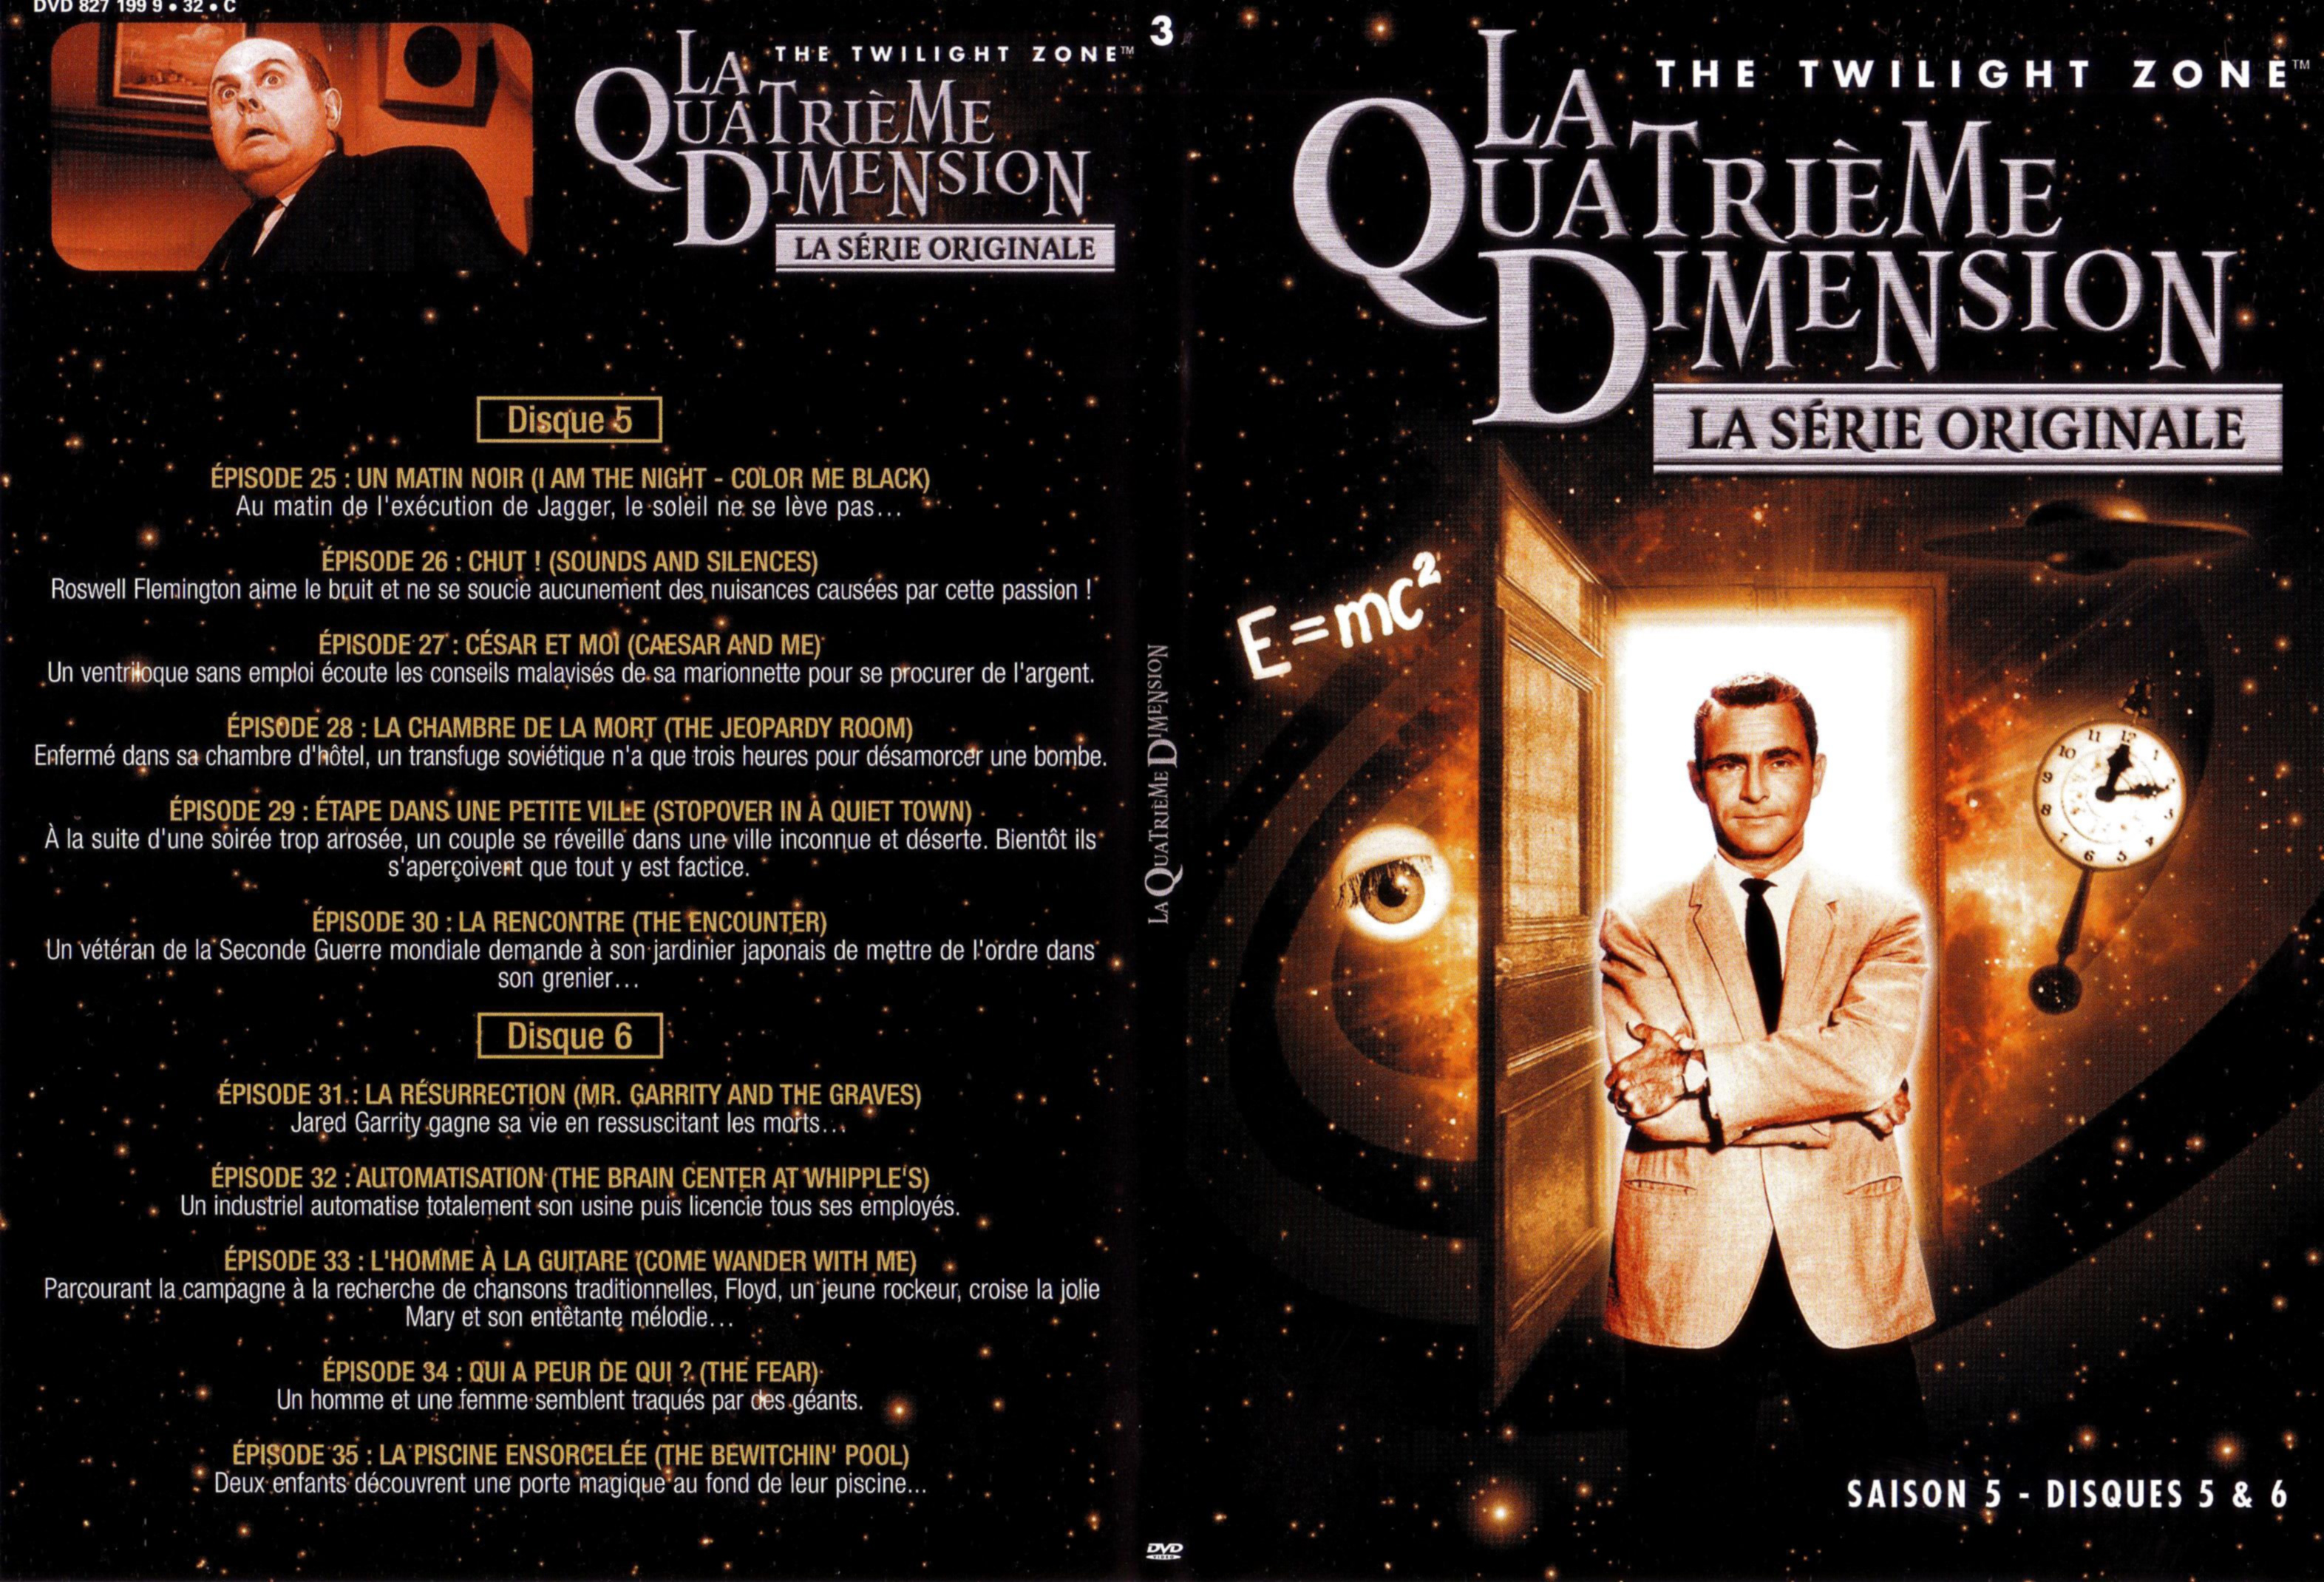 Jaquette DVD La quatrieme dimension saison 5 vol 3